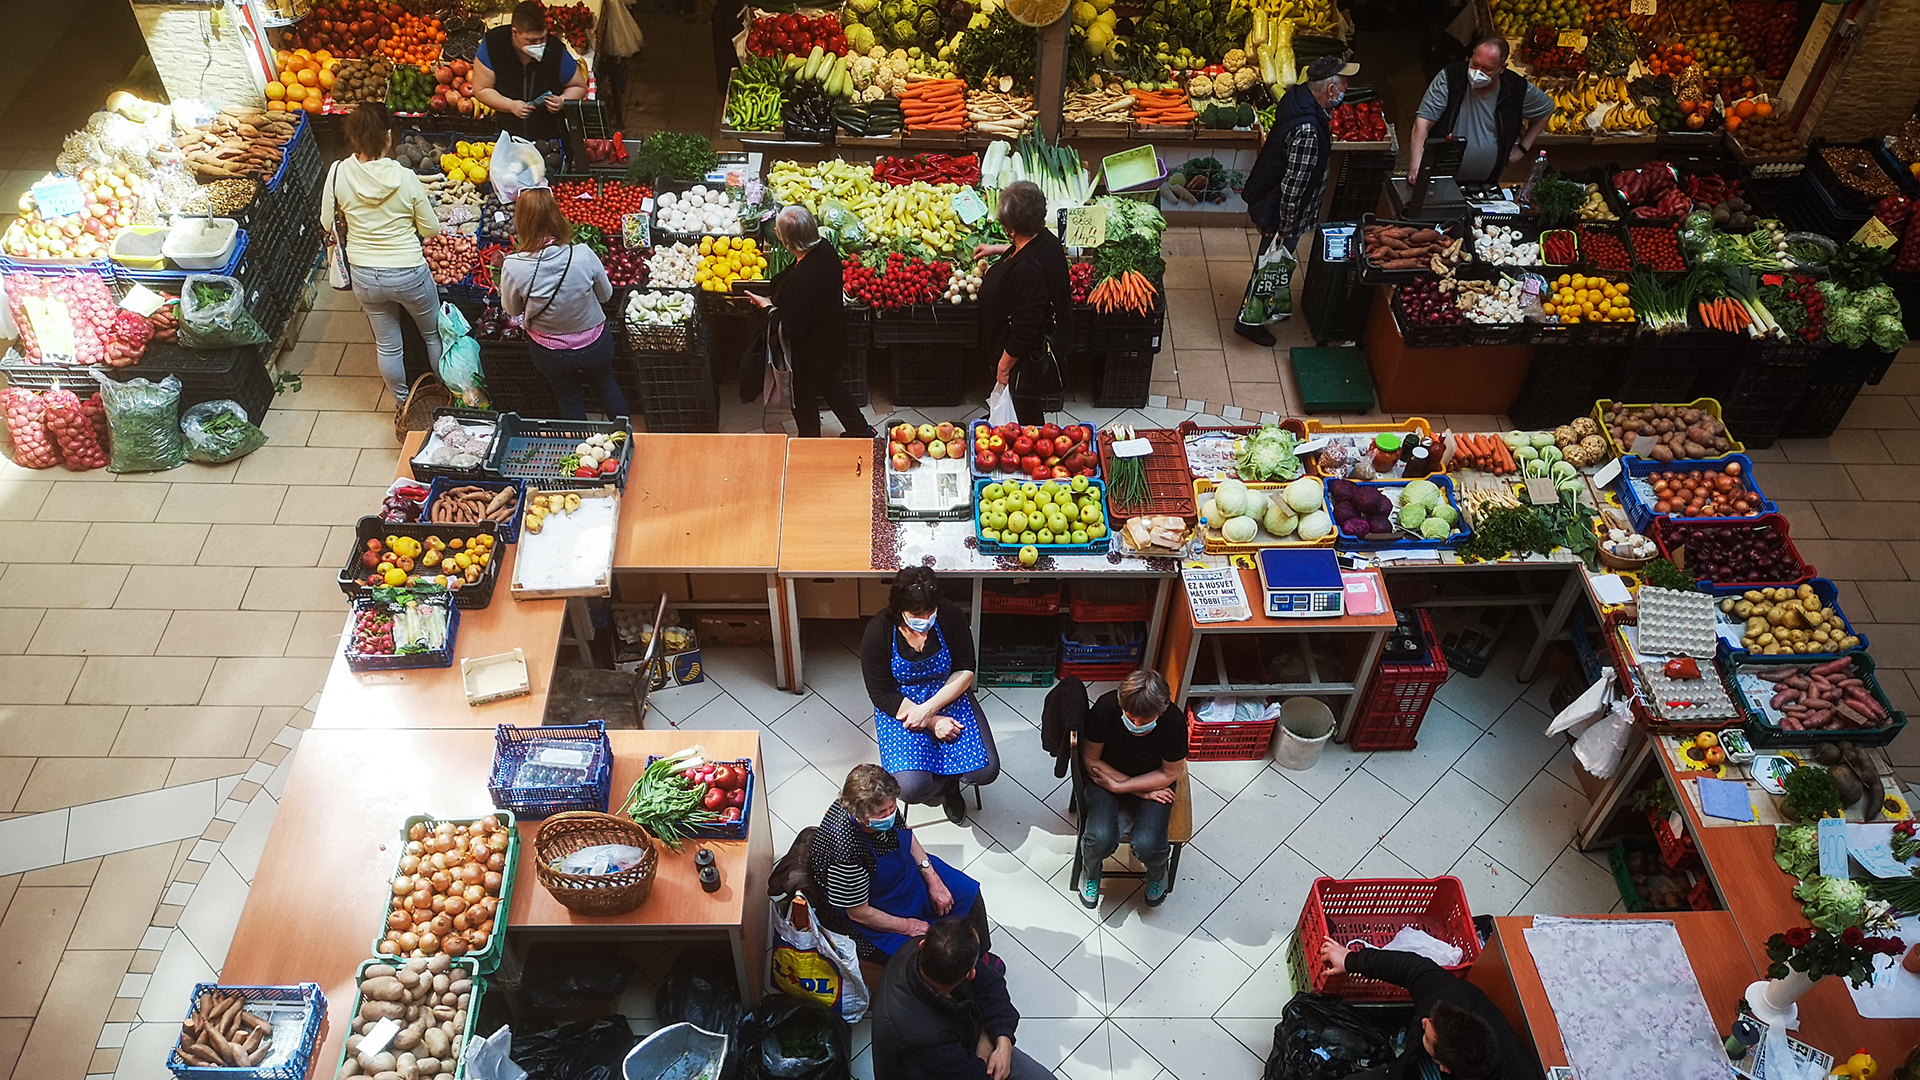 Marktstände mit Obst und Gemüse in Budapest | picture alliance/dpa/Sputnik